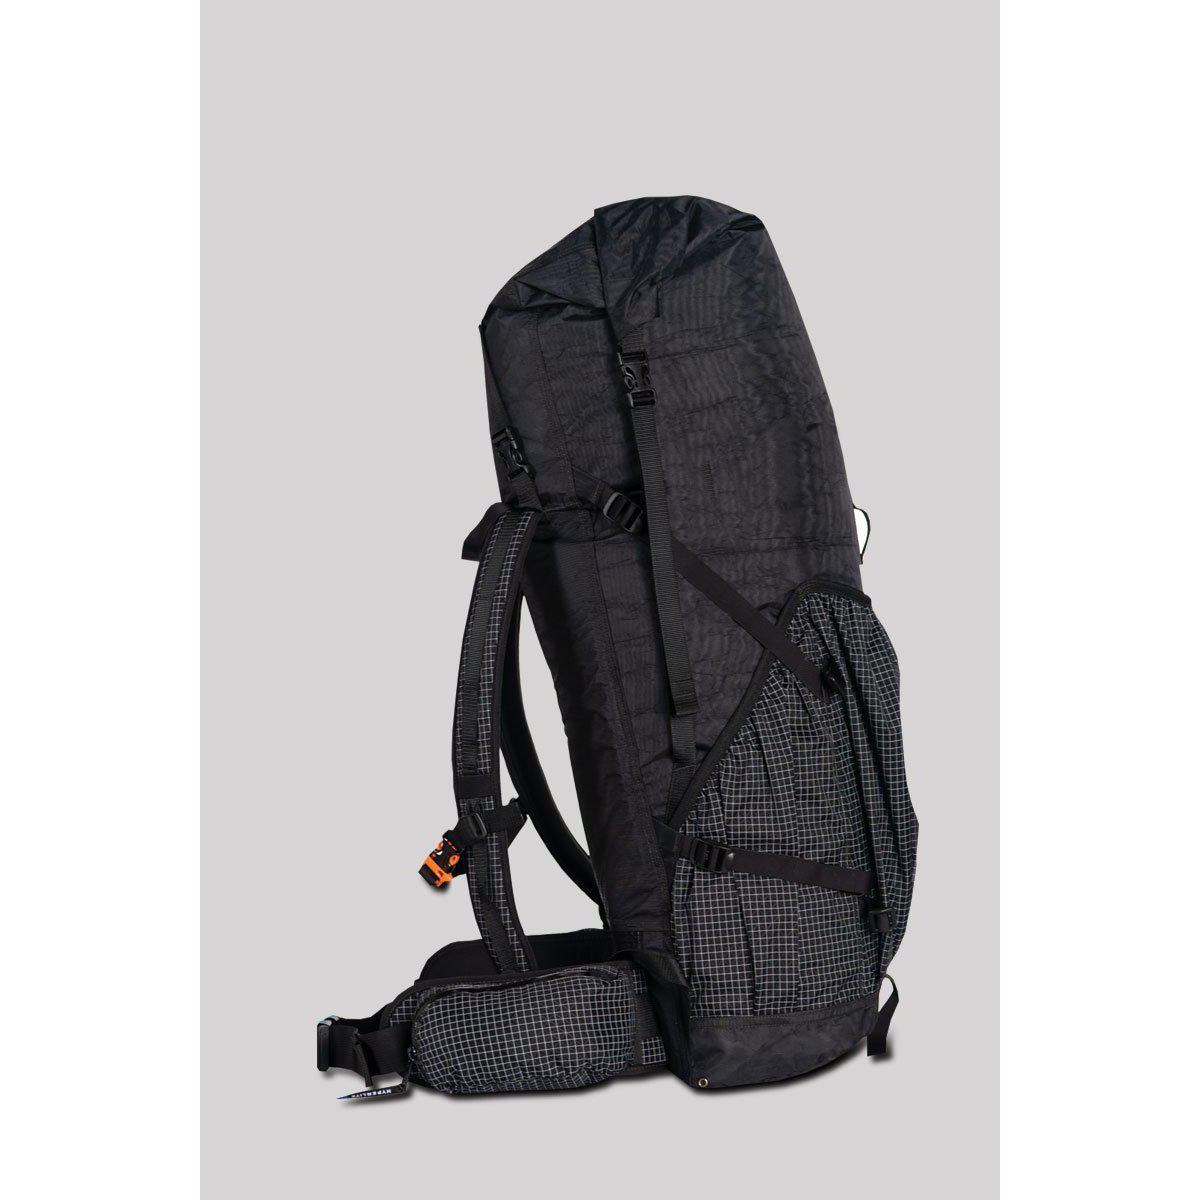 Hyperlite Mountain Gear 55 Southwest Ultralight Backpack – 2 Foot